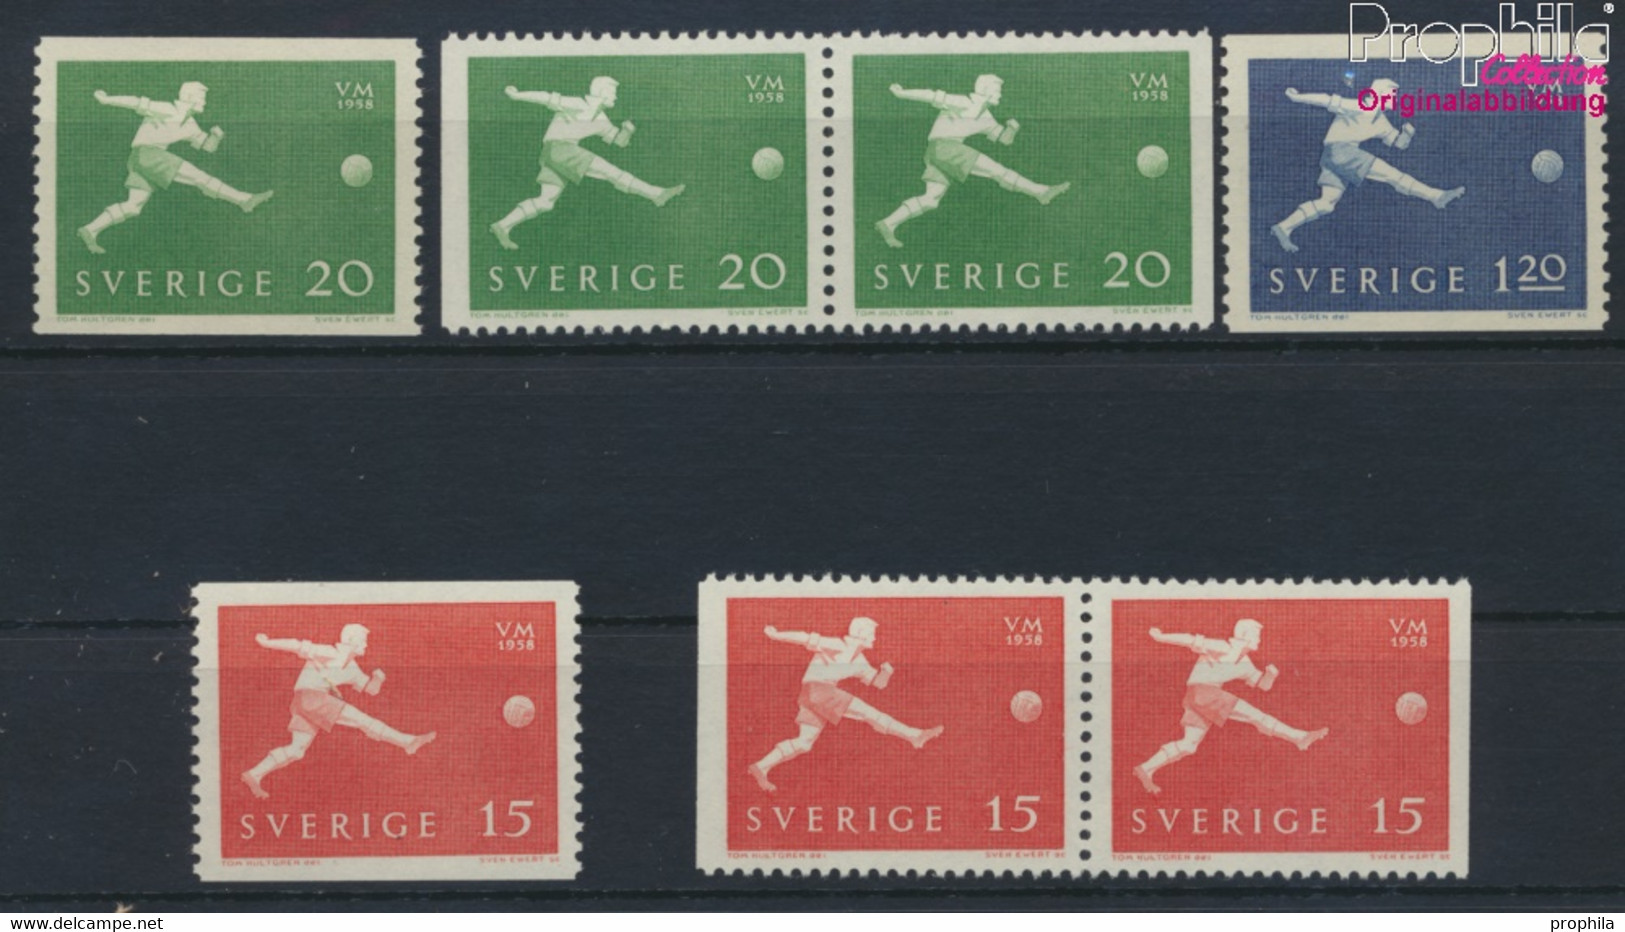 Schweden 438A,Dl,Dr,439A,Dl, Dr,440A (kompl.Ausg.) Postfrisch 1958 Fussball-WM (9949297 - Unused Stamps